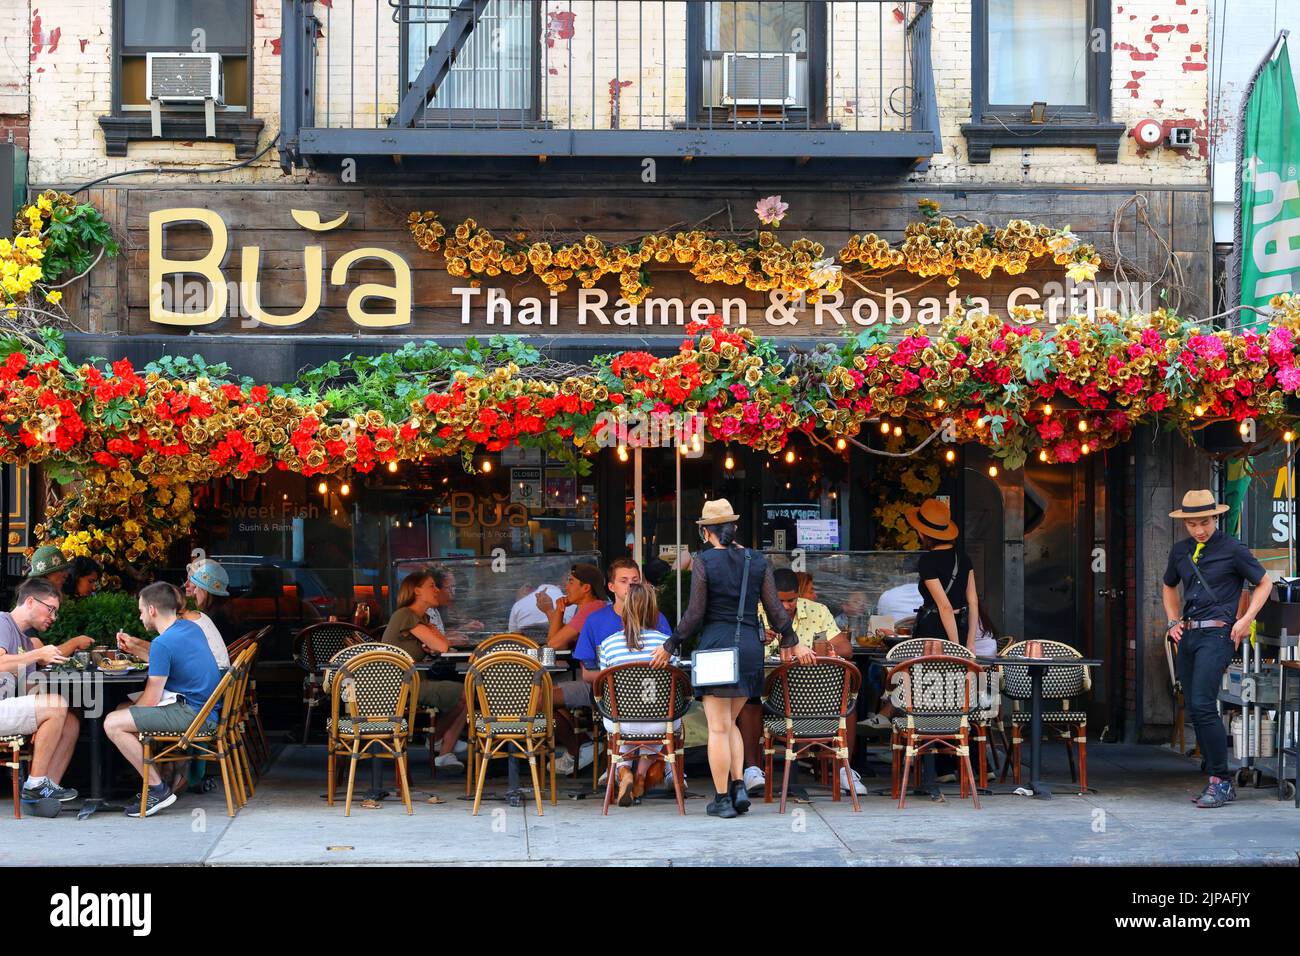 Bua Thai Ramen & Robata Grill, 1611 2. Ave, New York, NYC Foto von einem thailändischen und japanischen Restaurant in Manhattans Upper East Side Stockfoto